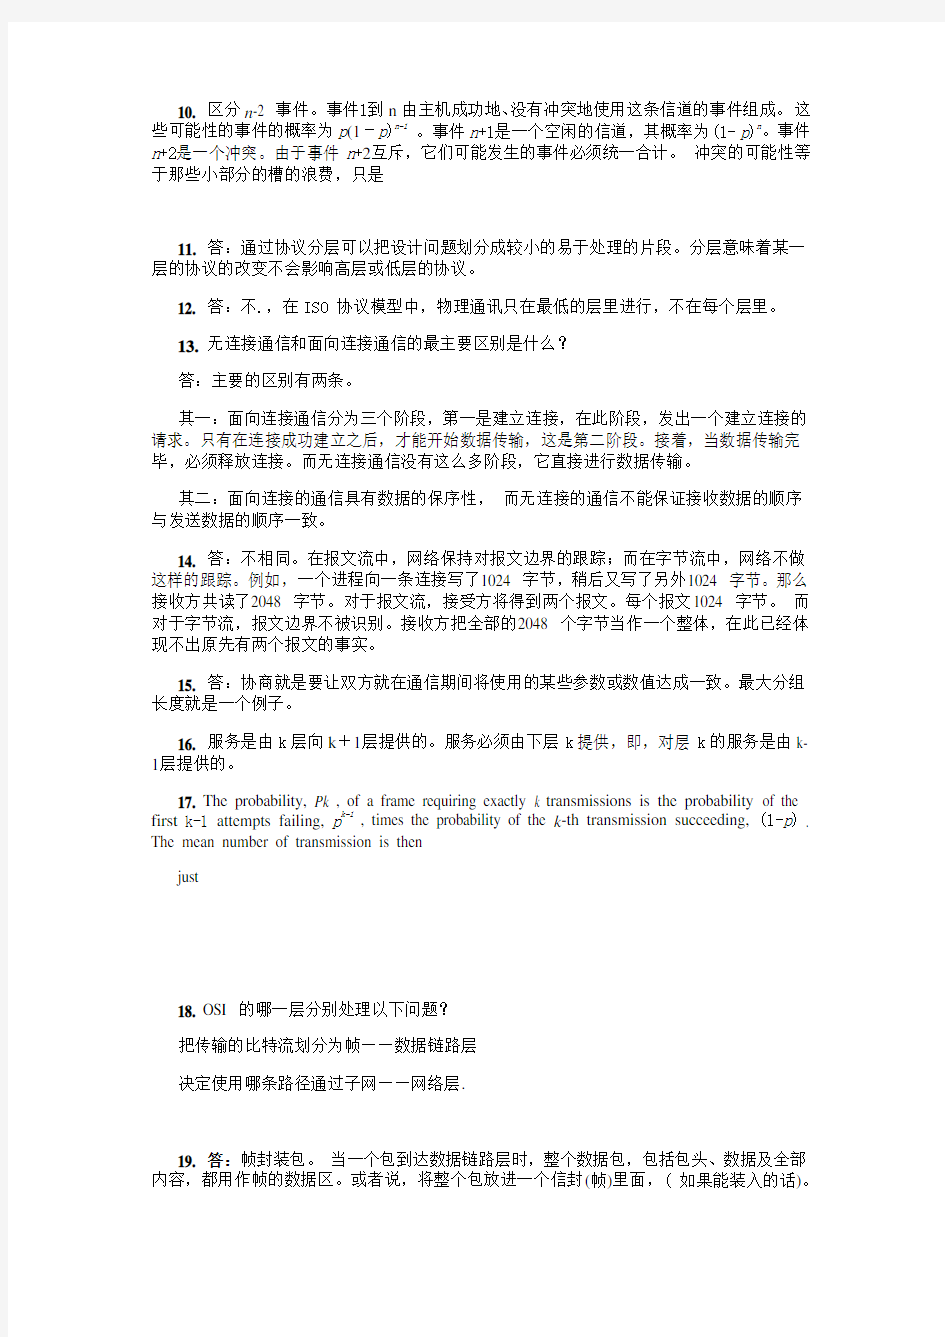 计算机网络(第4版) 清华大学出版社 习题答案(中文版)